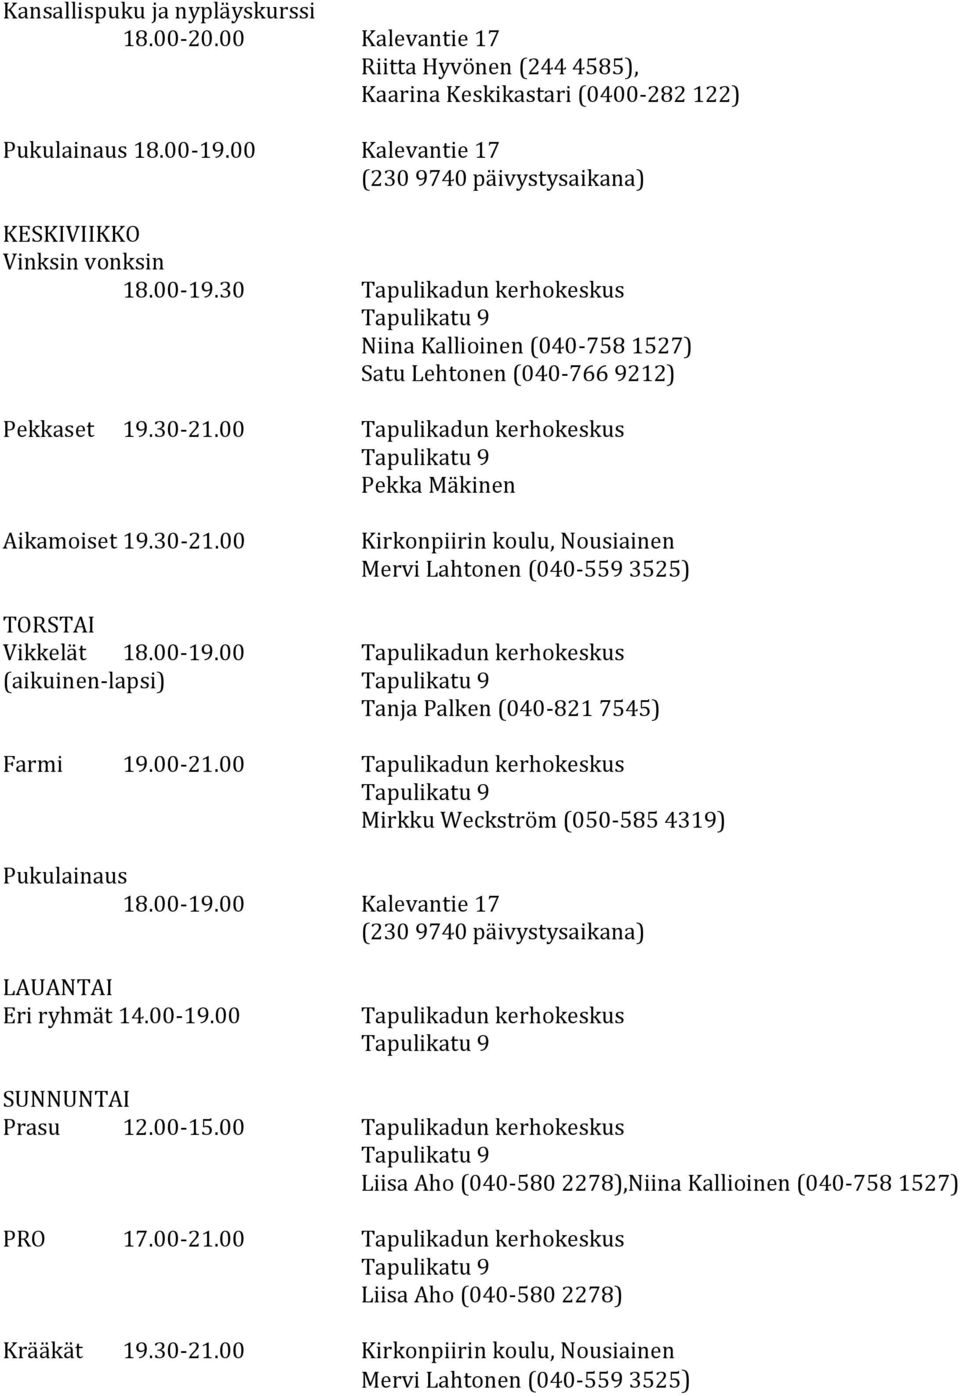 00 Tapulikadun kerhokeskus Pekka Mäkinen Aikamoiset 19.30-21.00 Kirkonpiirin koulu, Nousiainen Mervi Lahtonen (040-559 3525) TORSTAI Vikkelät 18.00-19.